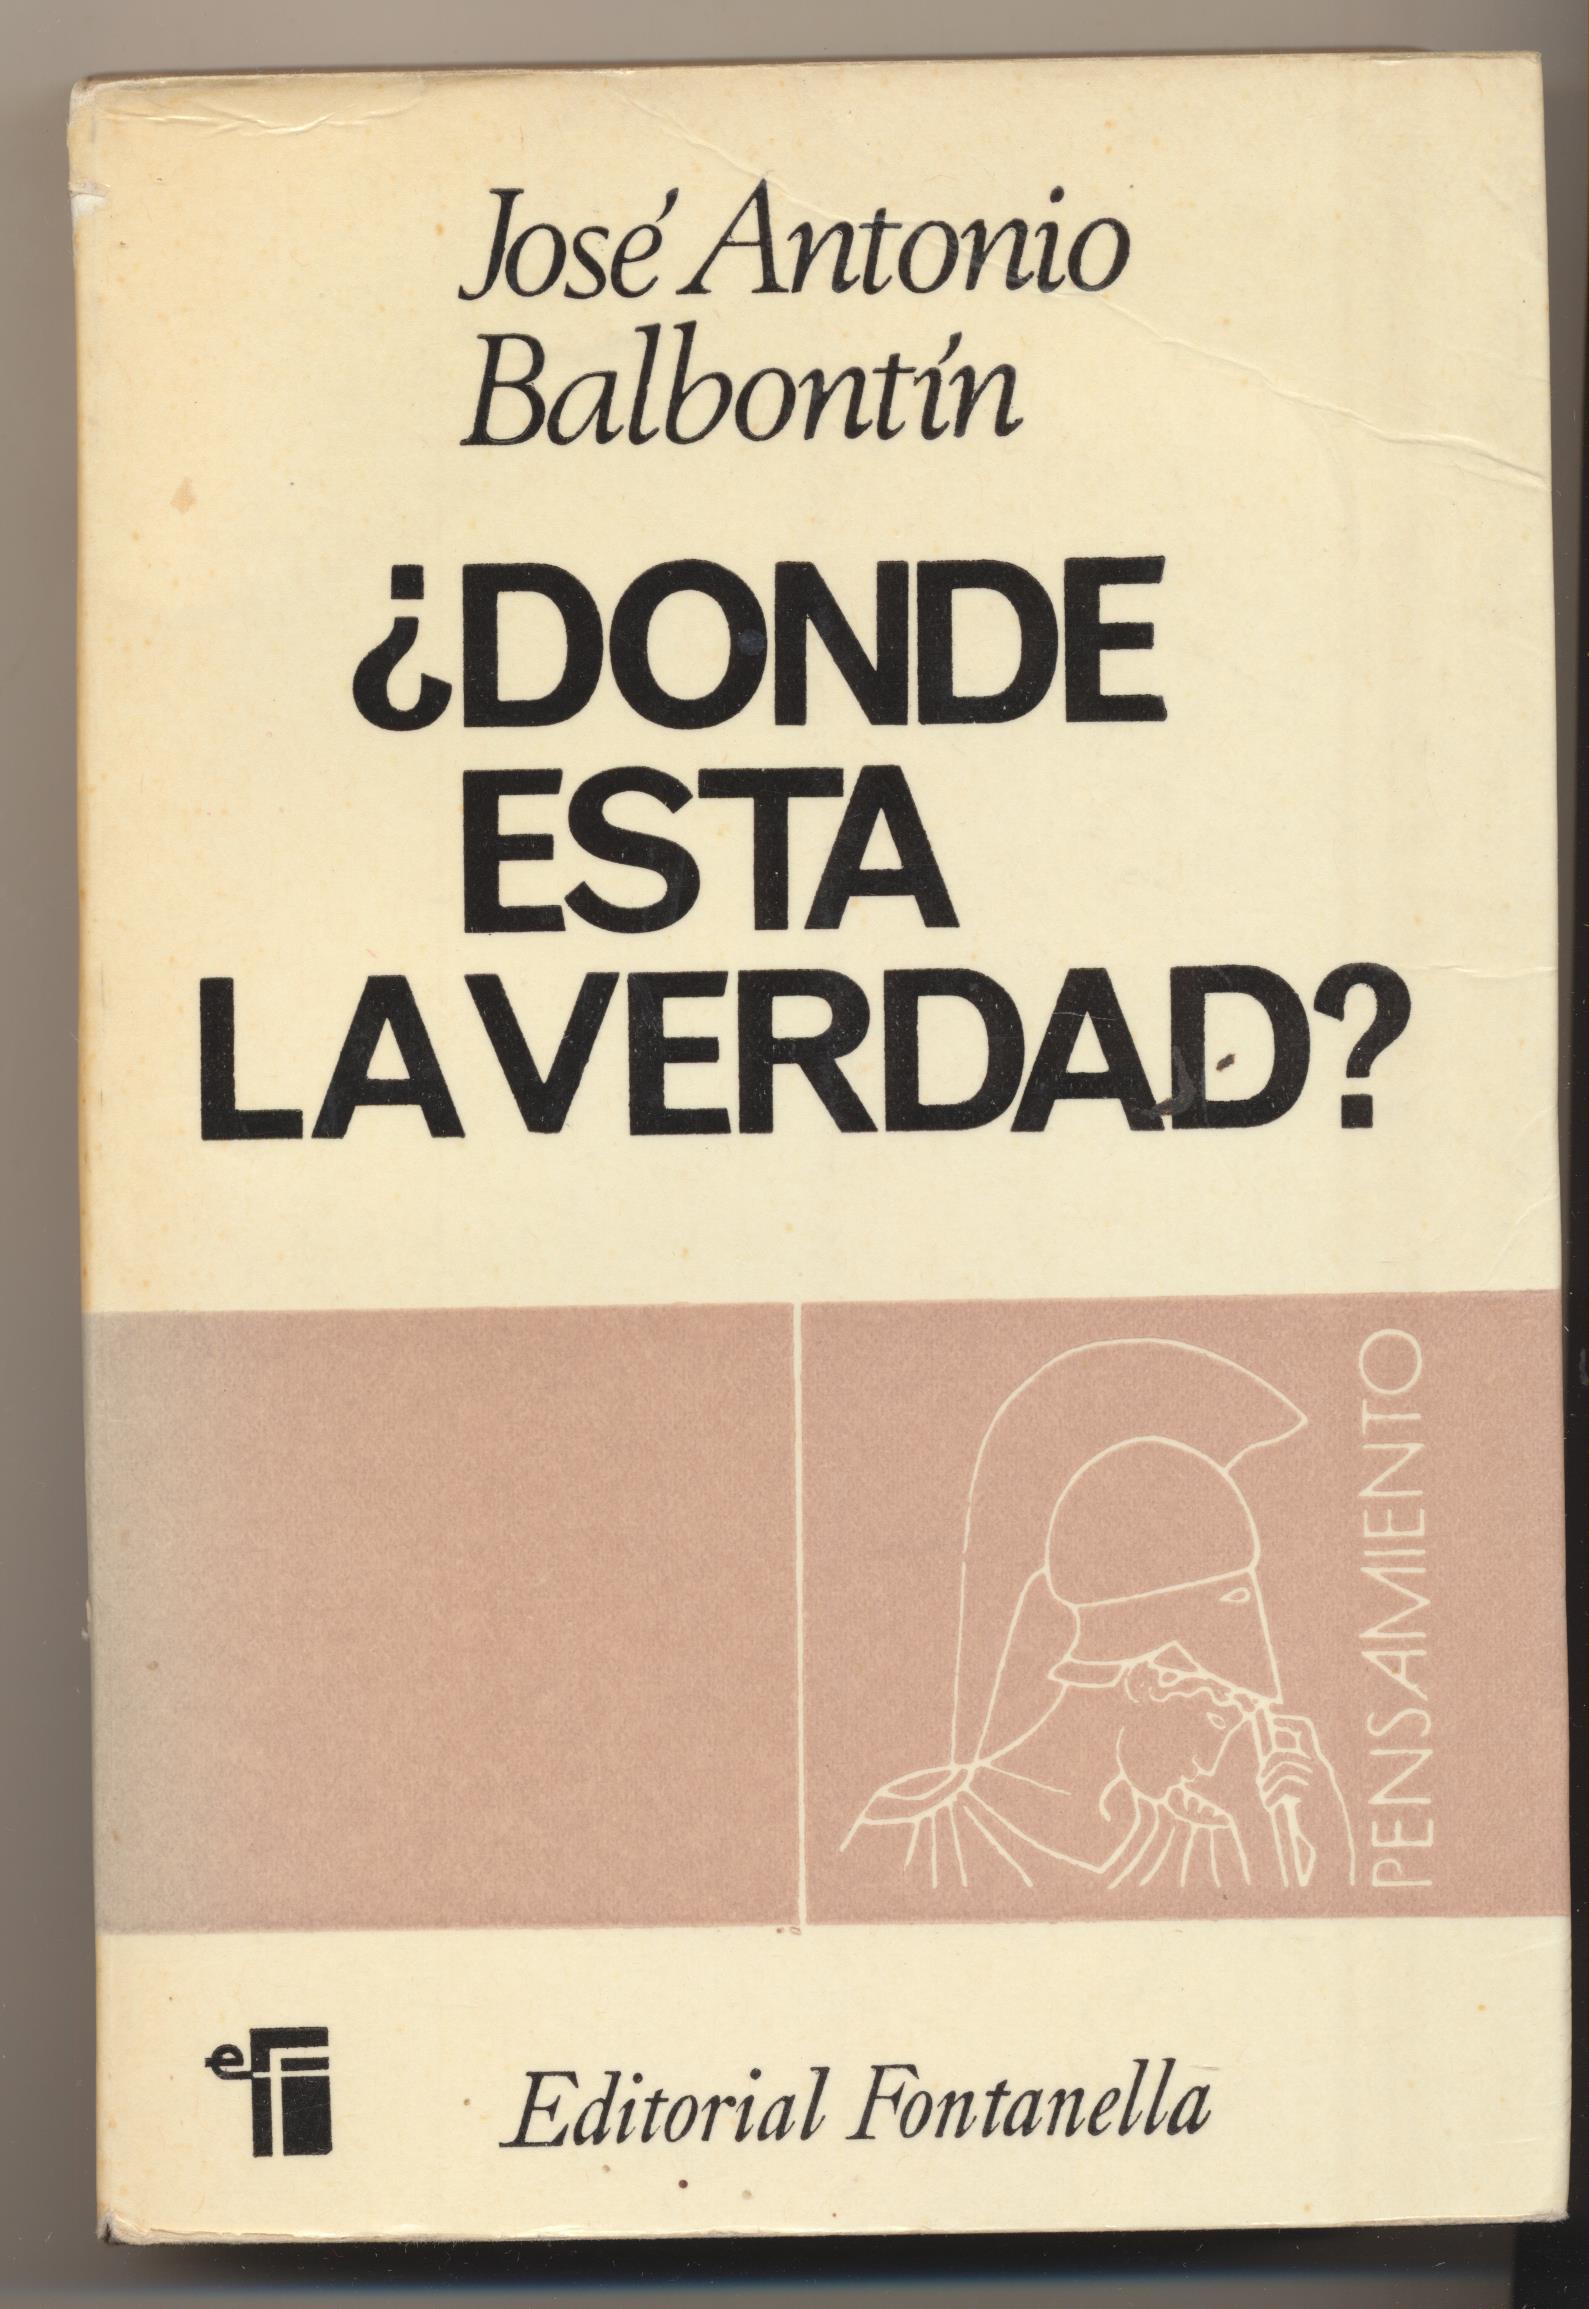 José Antonio Balvontin. ¿Donde esta la verdad? 1ª Edición Editorial Fontanella 1967